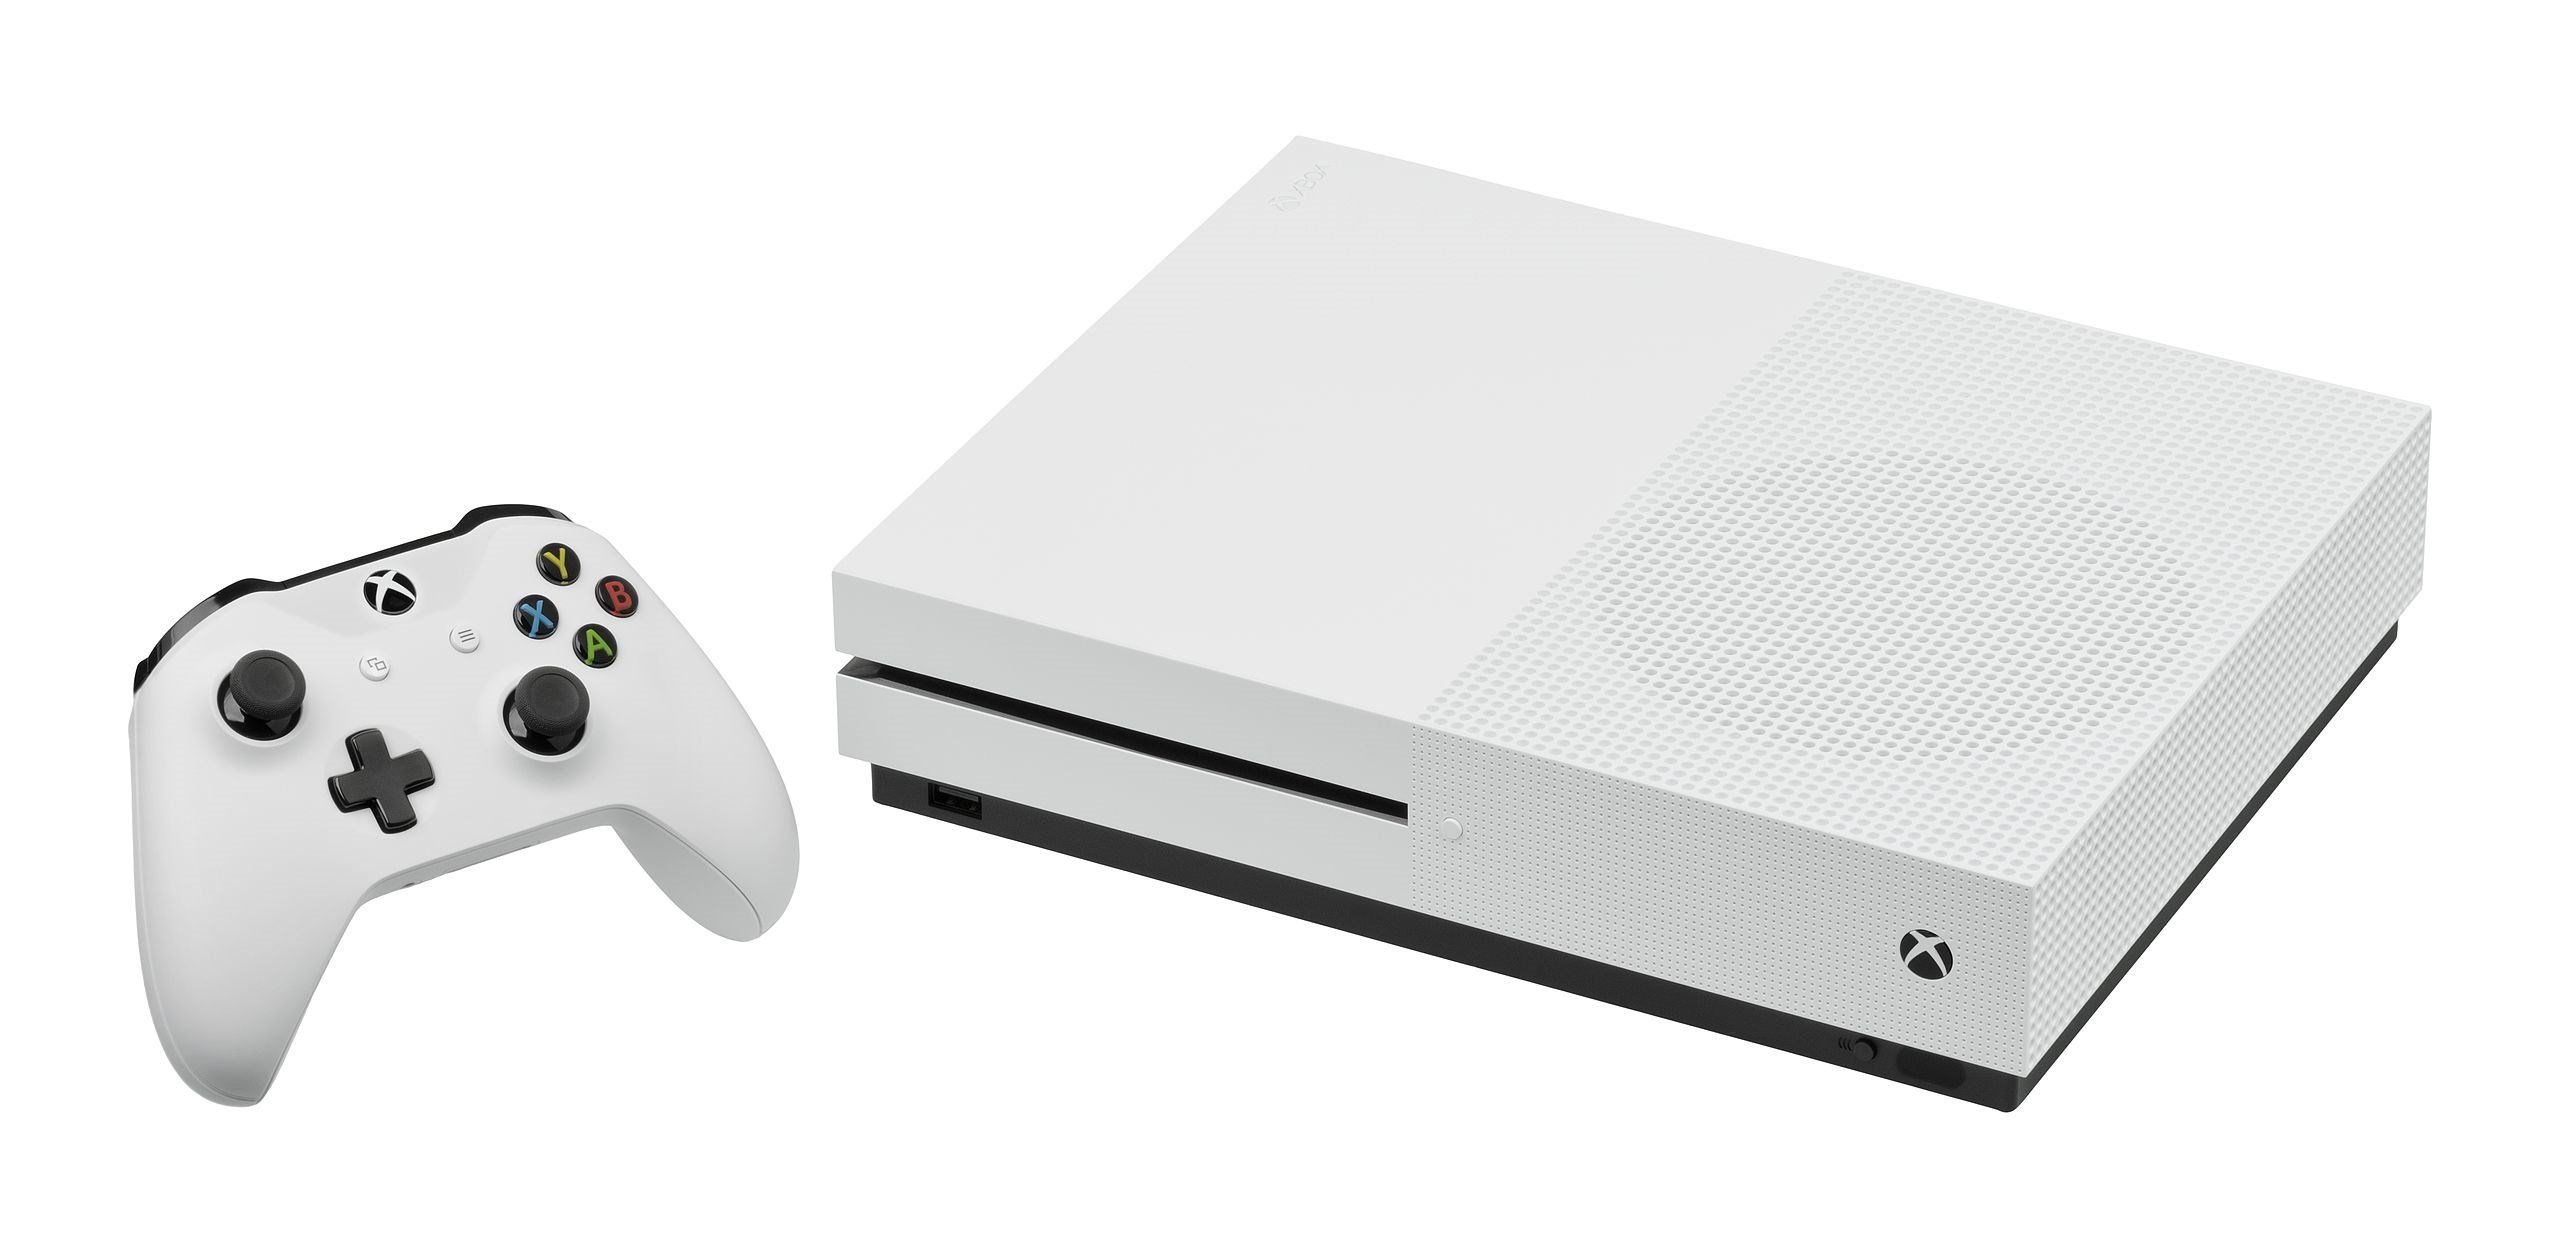 Microsoft tüm Xbox One konsollarının üretimini durdurdu